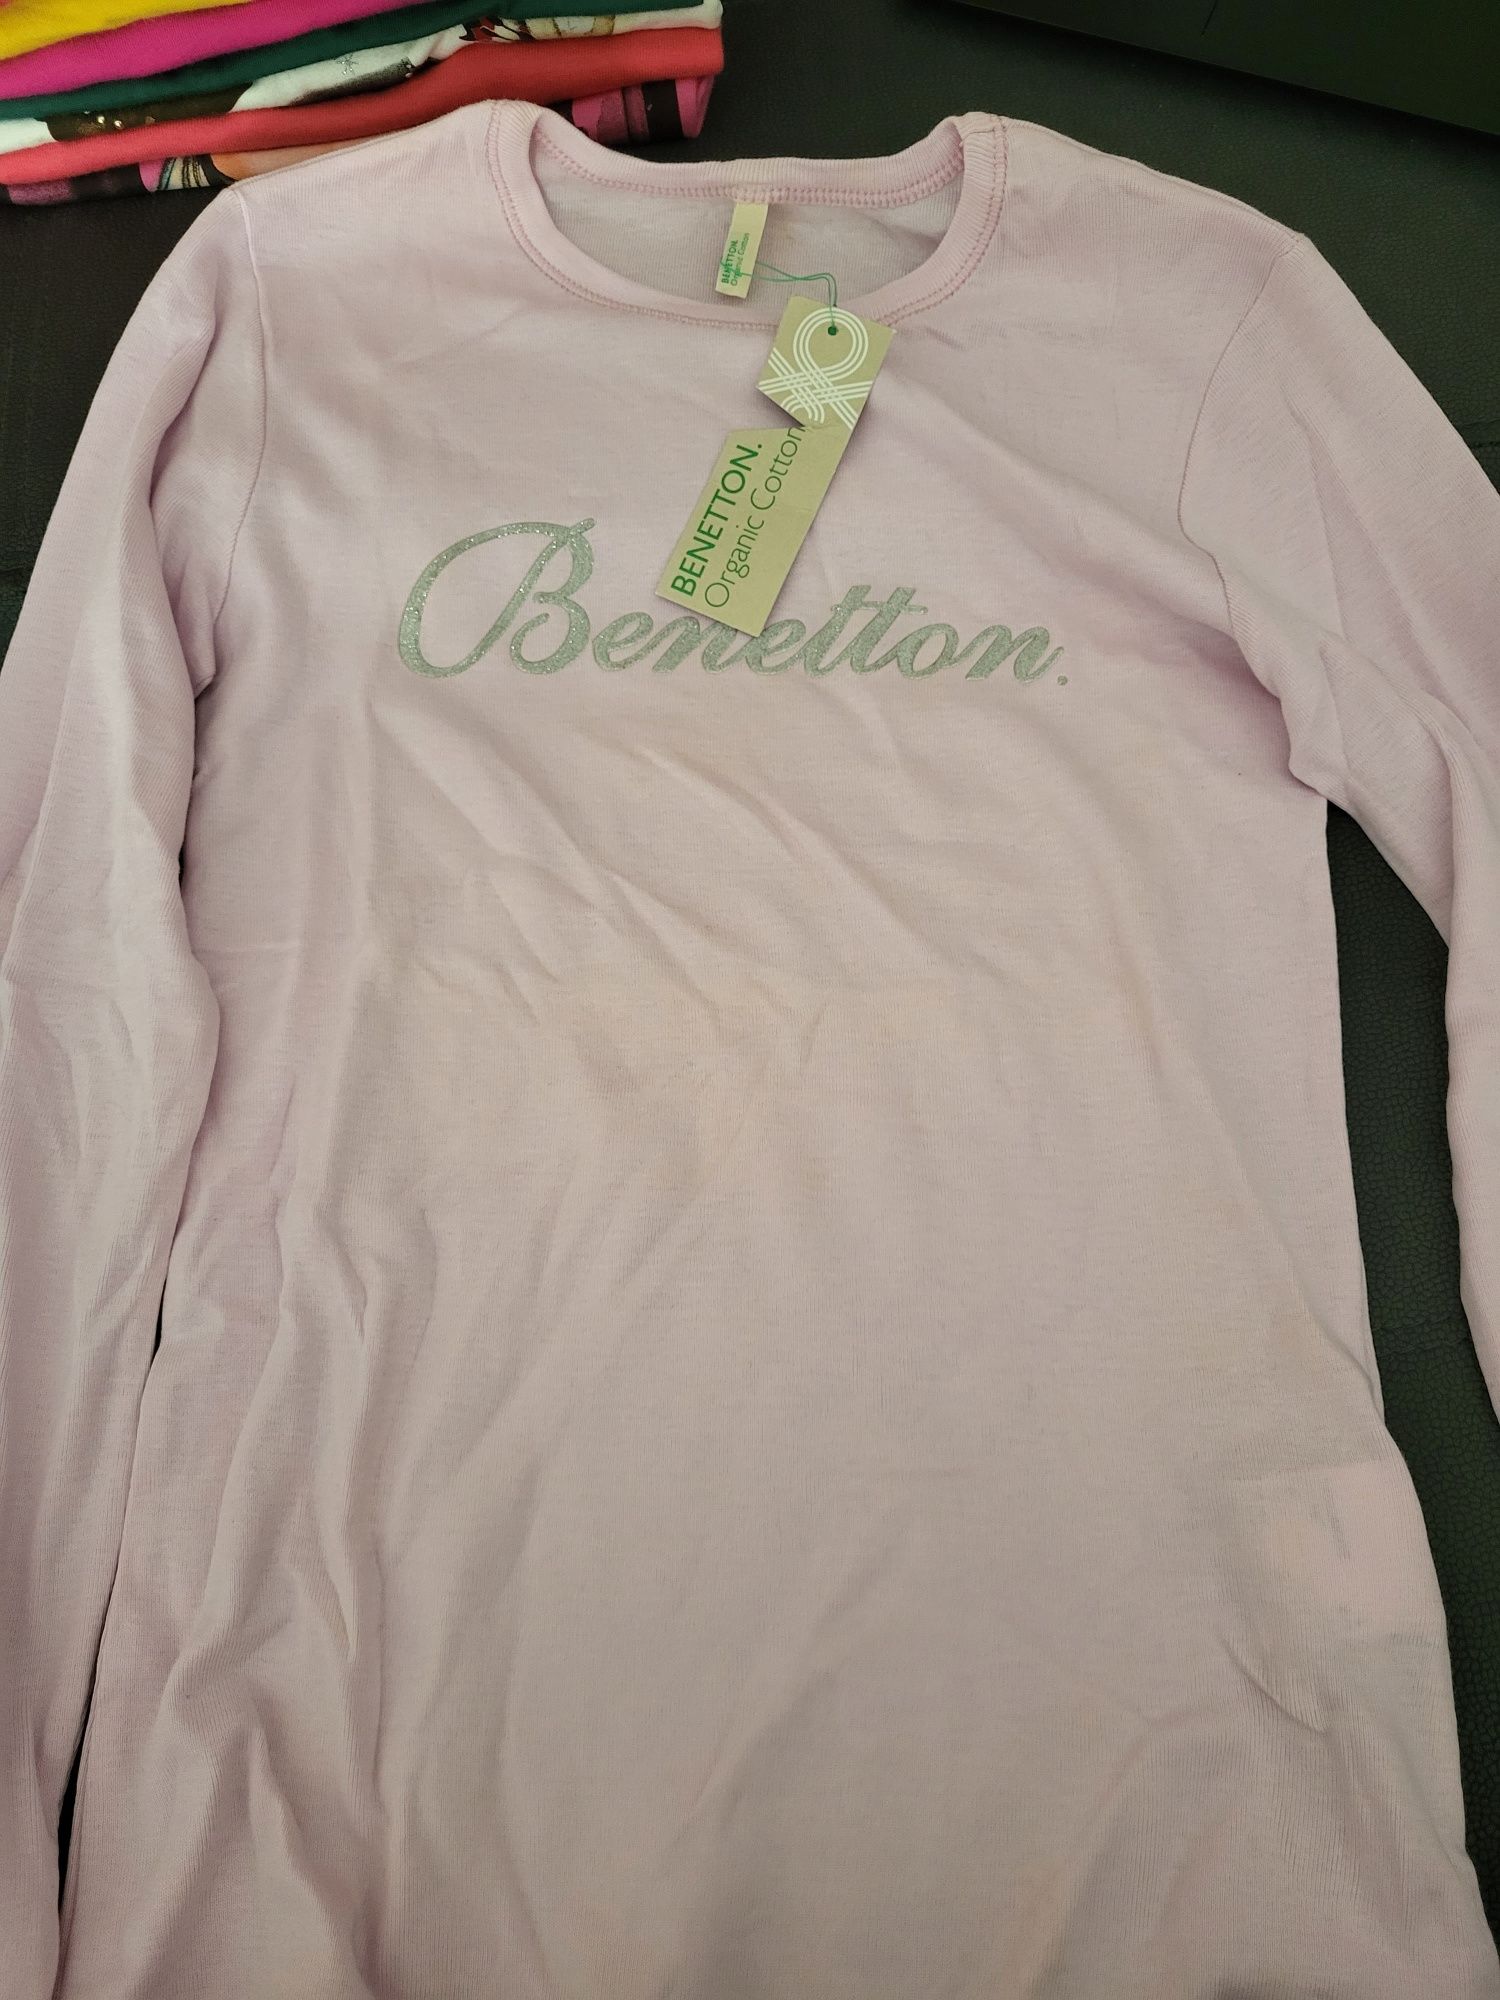 Camisola rosa clara marca "Benetton"- Tamanho 8-9 anos